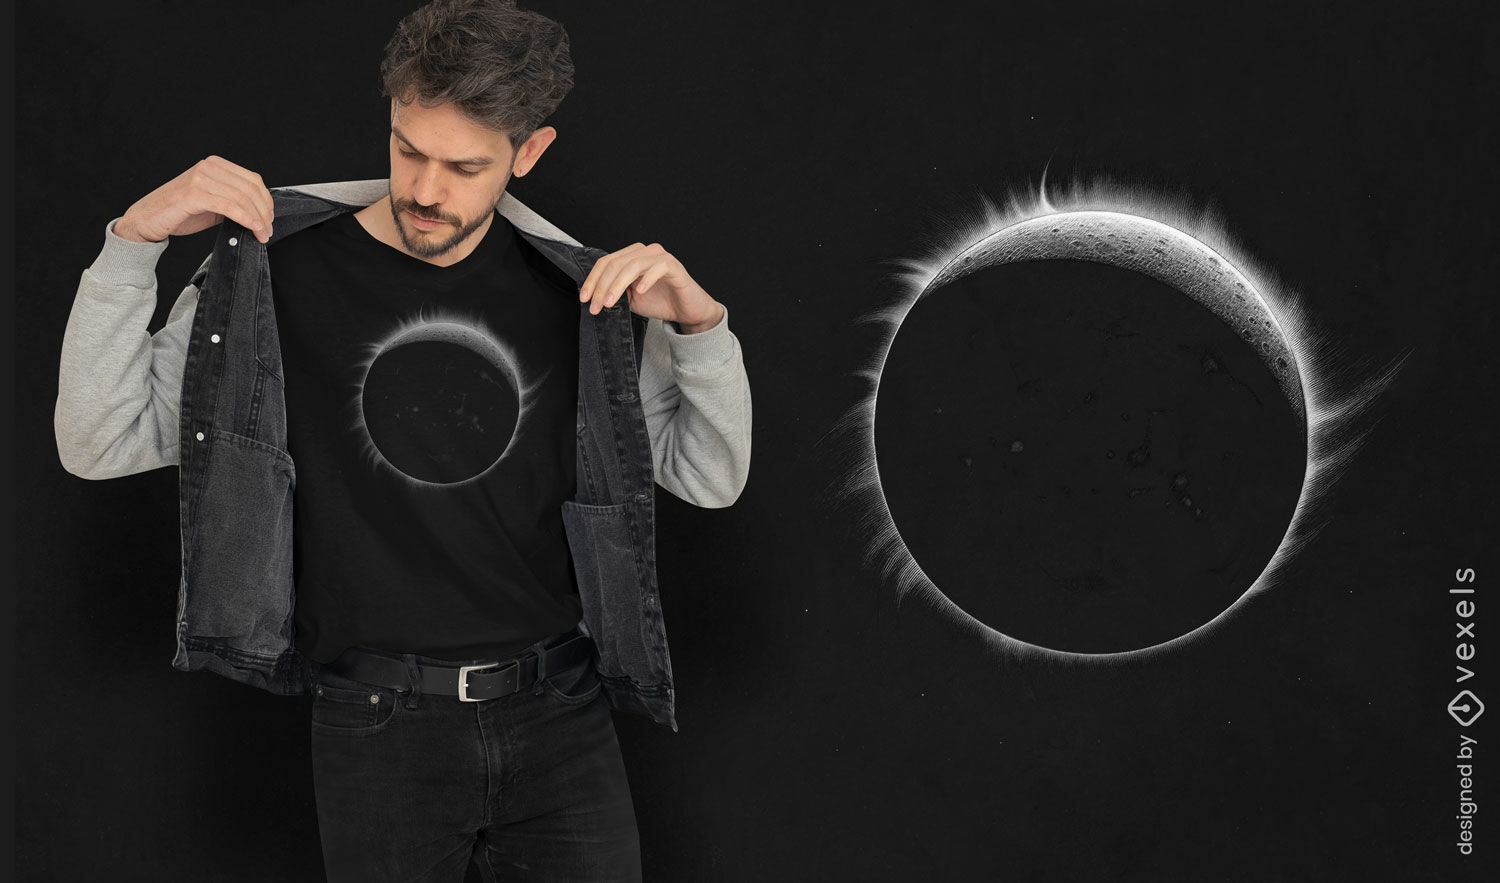 Dise?o de camiseta eclipse solar.